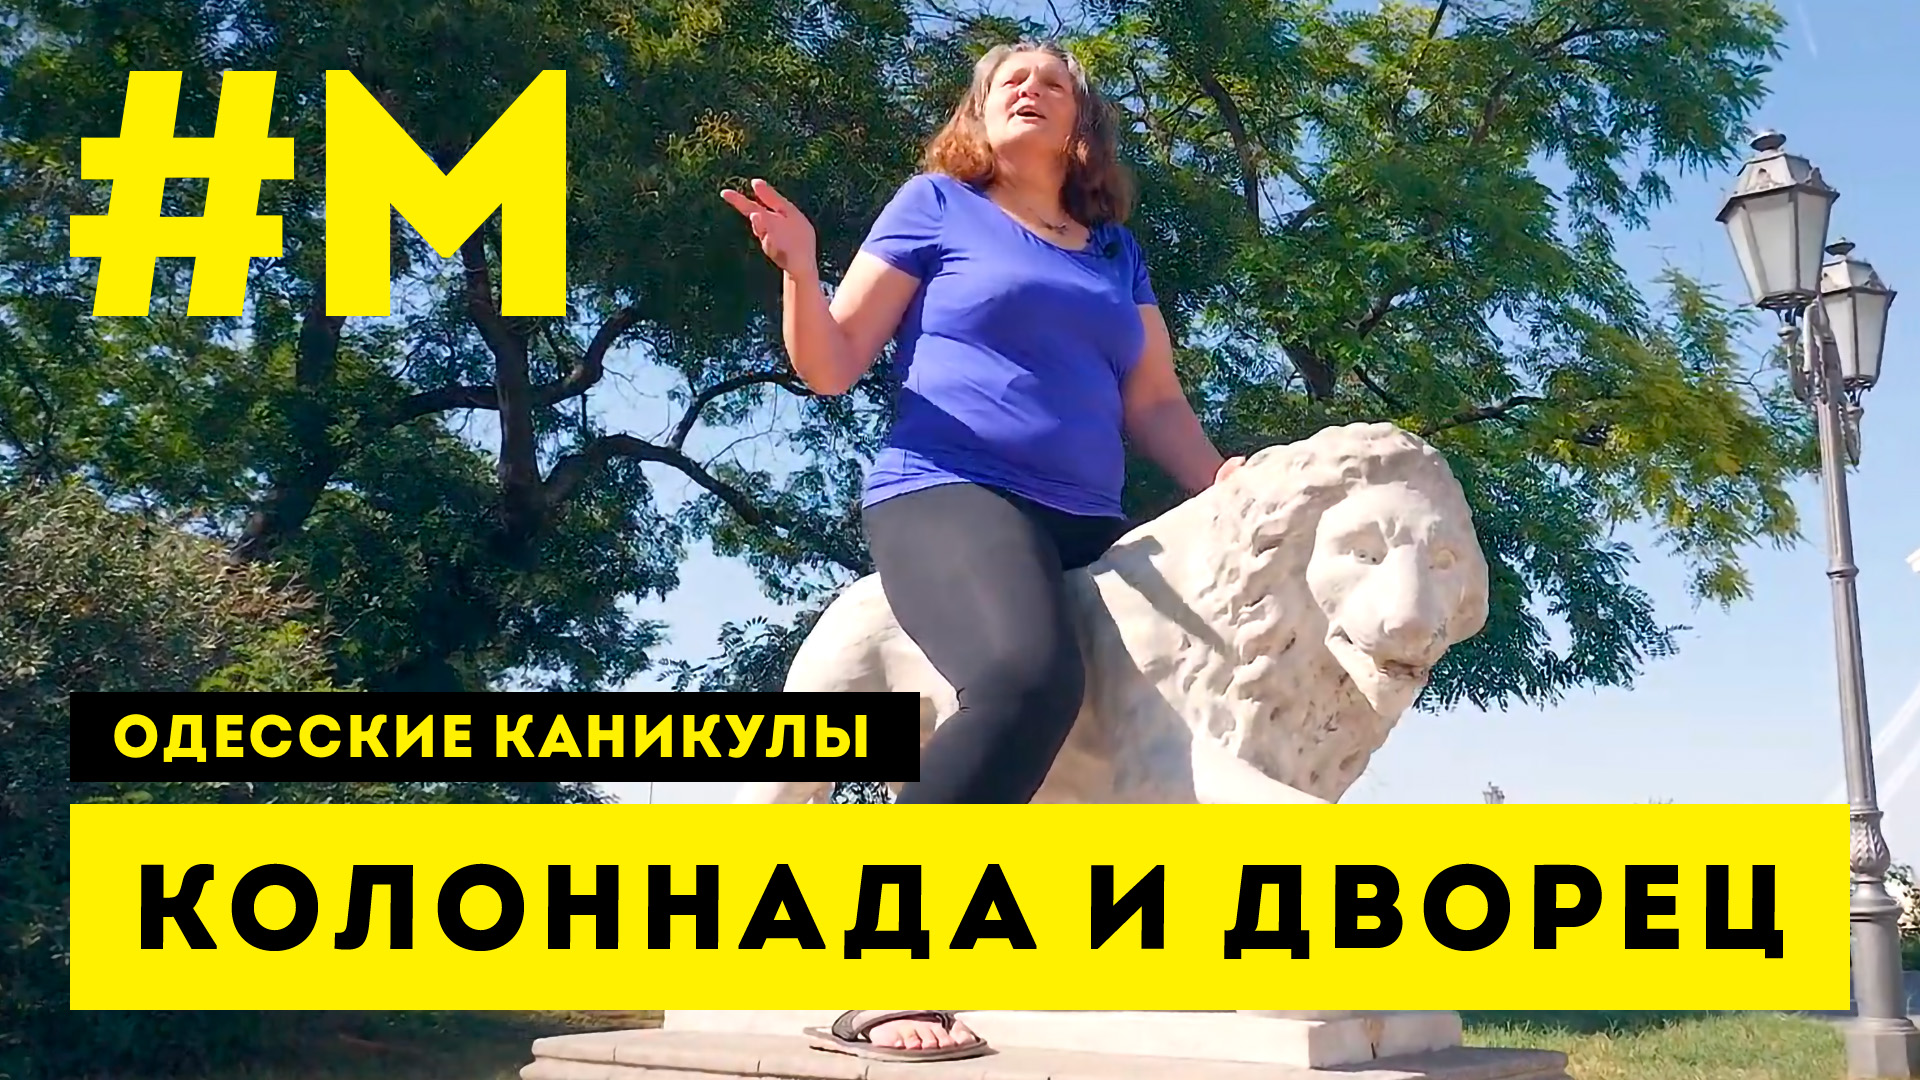 #МОНТЯН: Воронцовский лев, а не Мариинский павиан ? #ОдесскиеКаникулы [6.09.2020 г.]